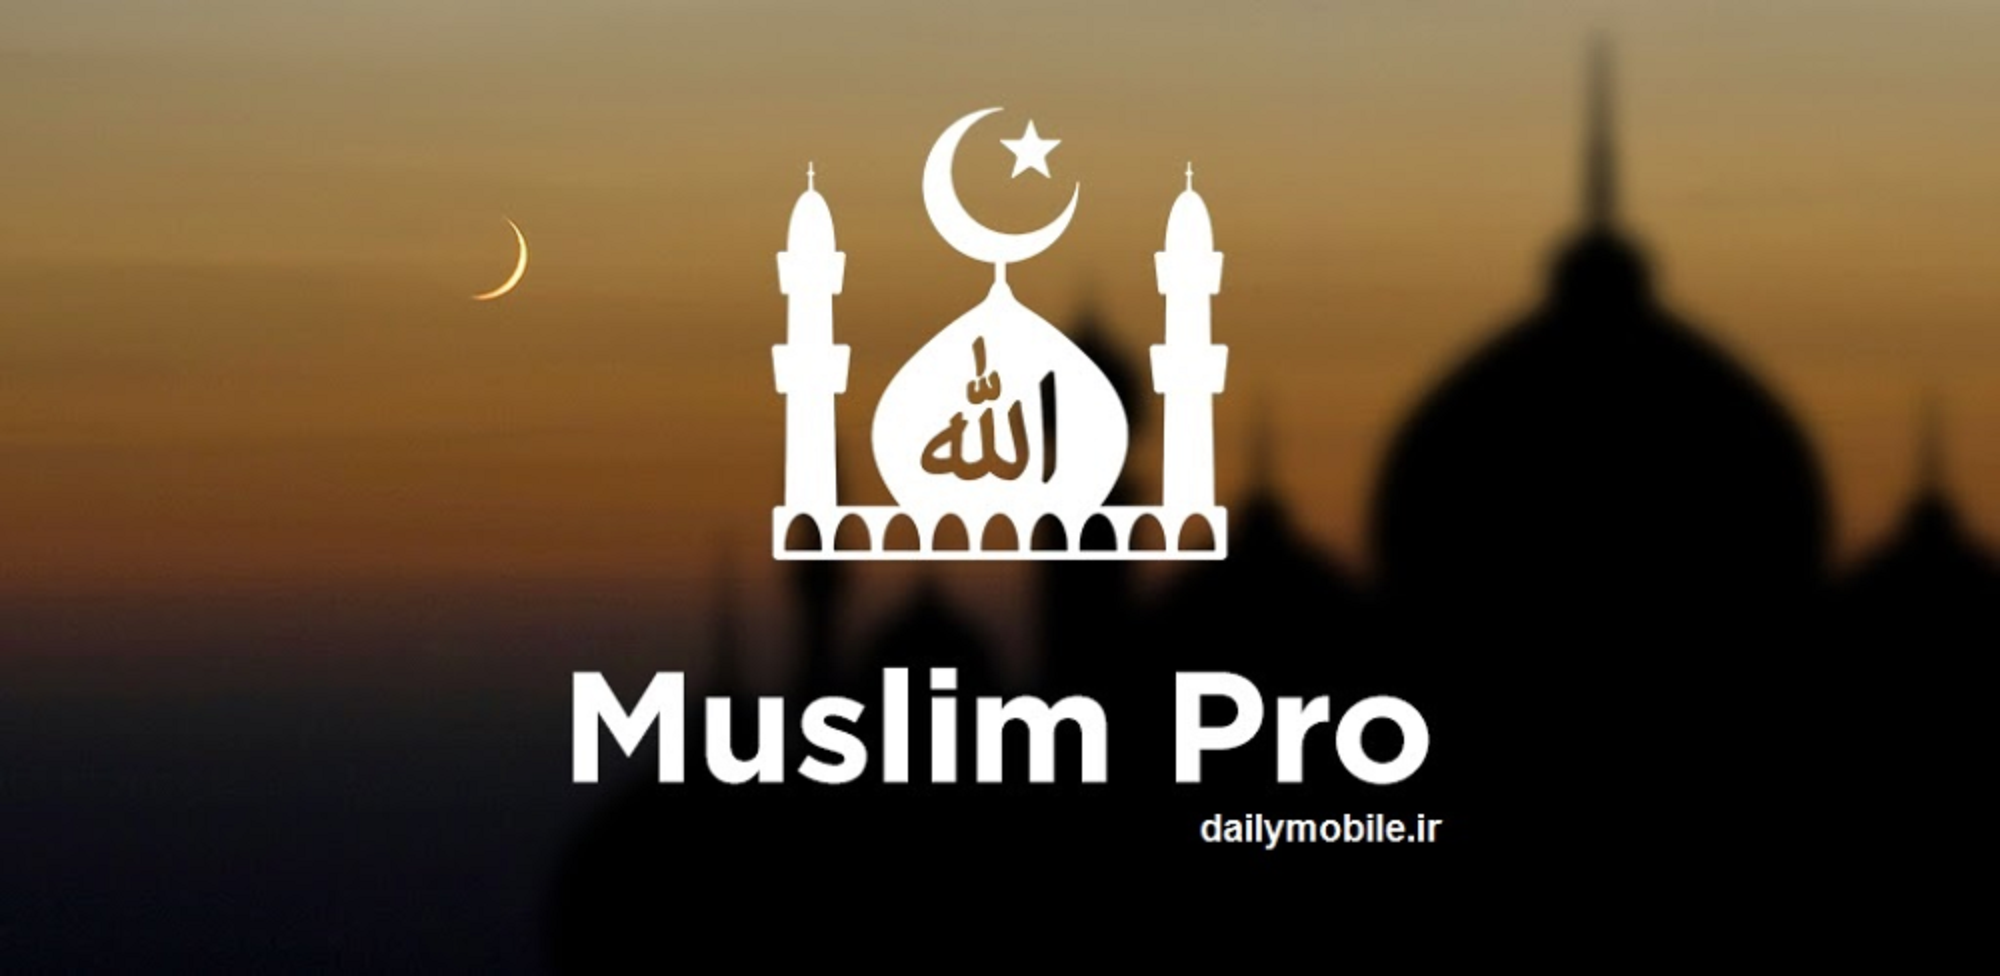 Muslim Pro: l'armée américaine aurait acheté les données de application de prière musulmane pour 'lutter contre le terrorisme'